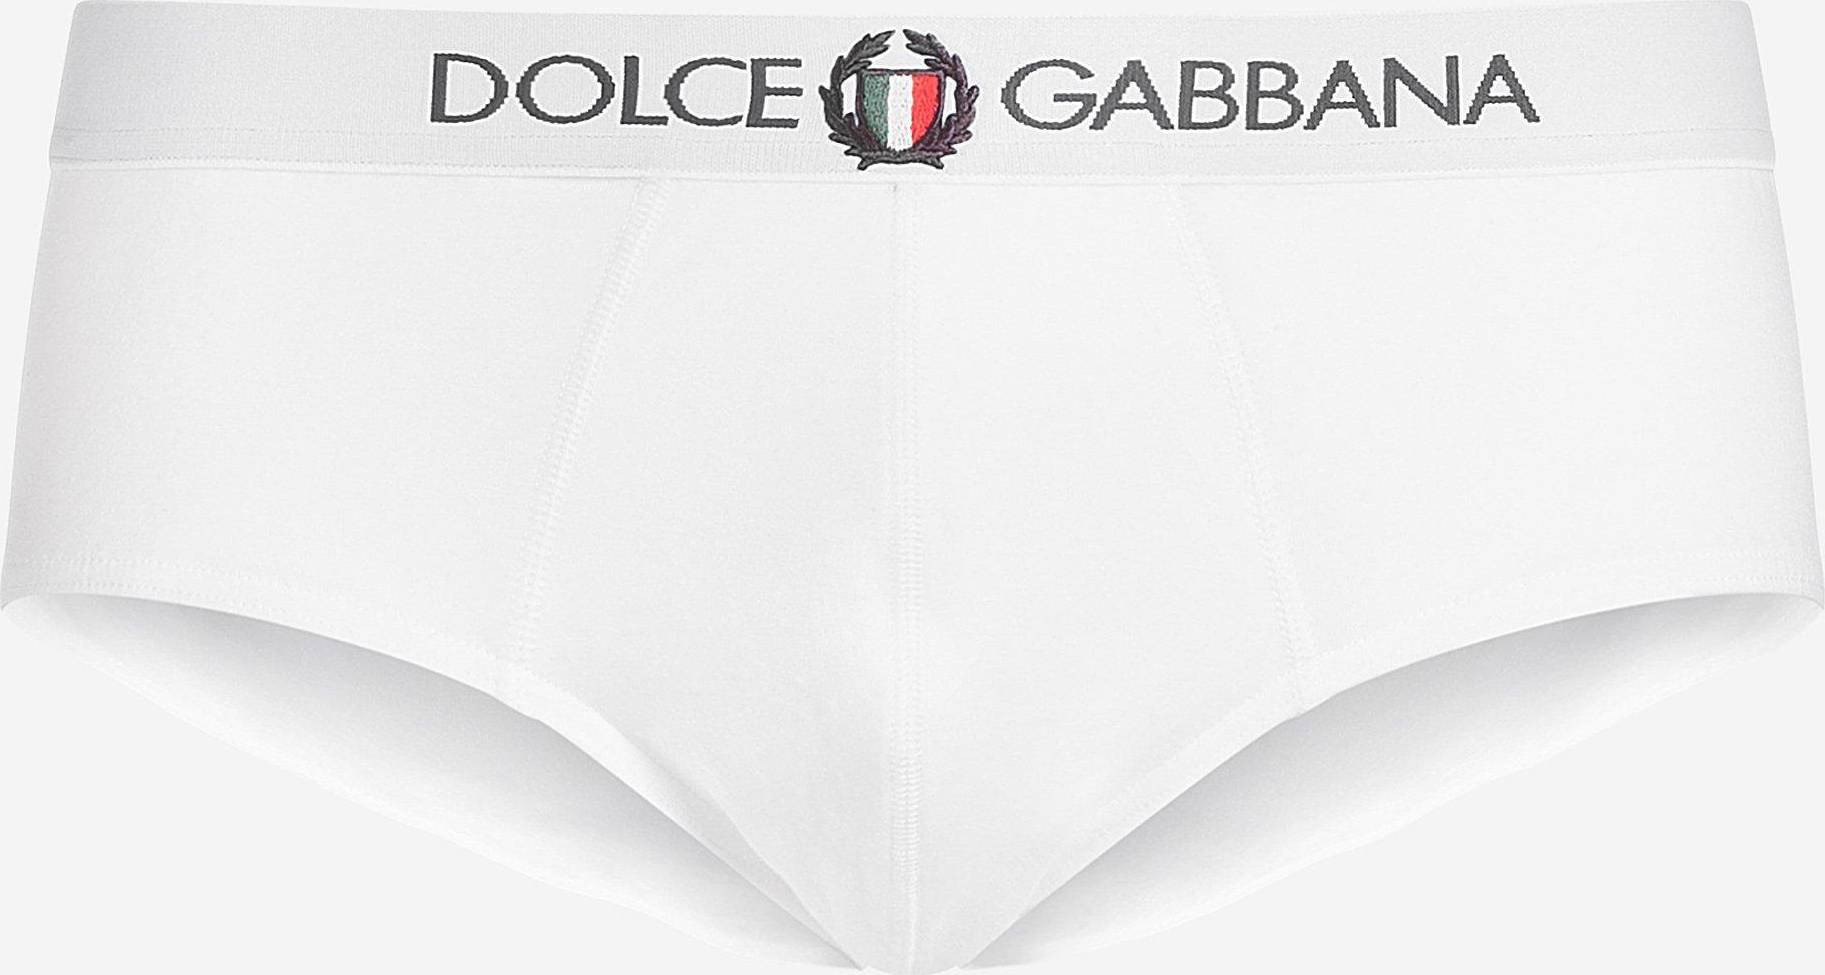 Dolce & Gabbana Brando briefs in stretch cotton • Price